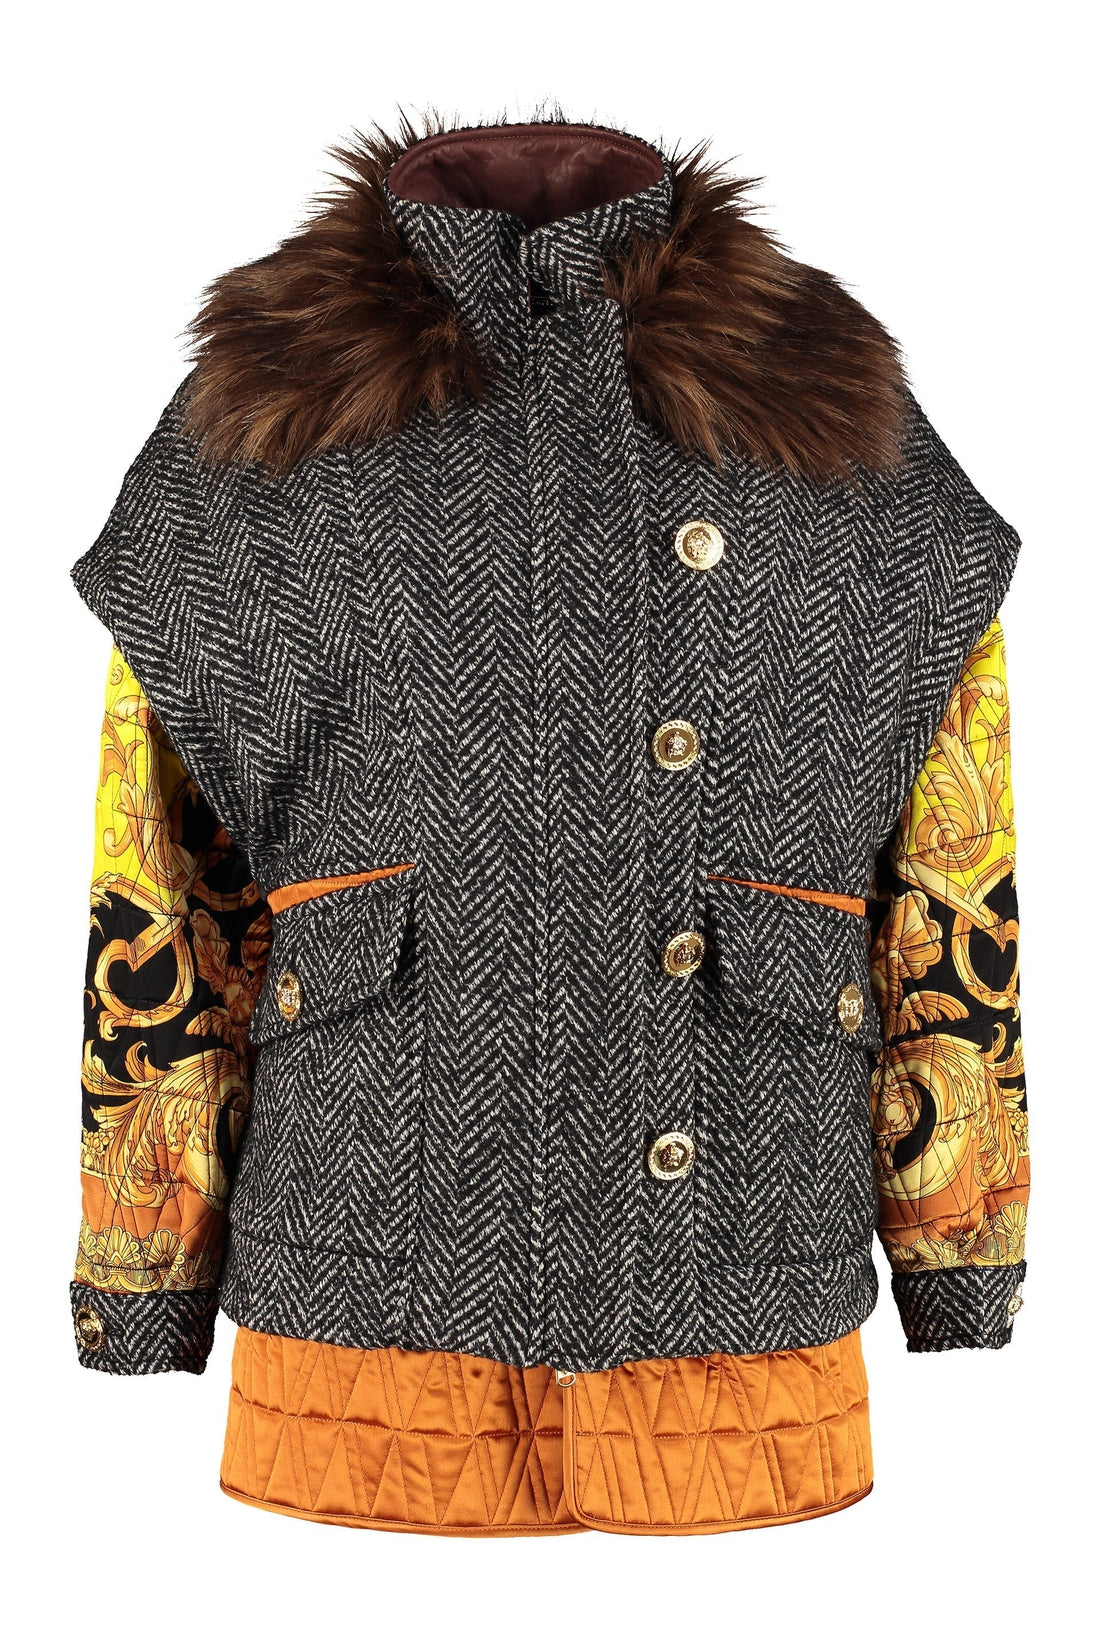 Versace-OUTLET-SALE-Wool blend jacket-ARCHIVIST